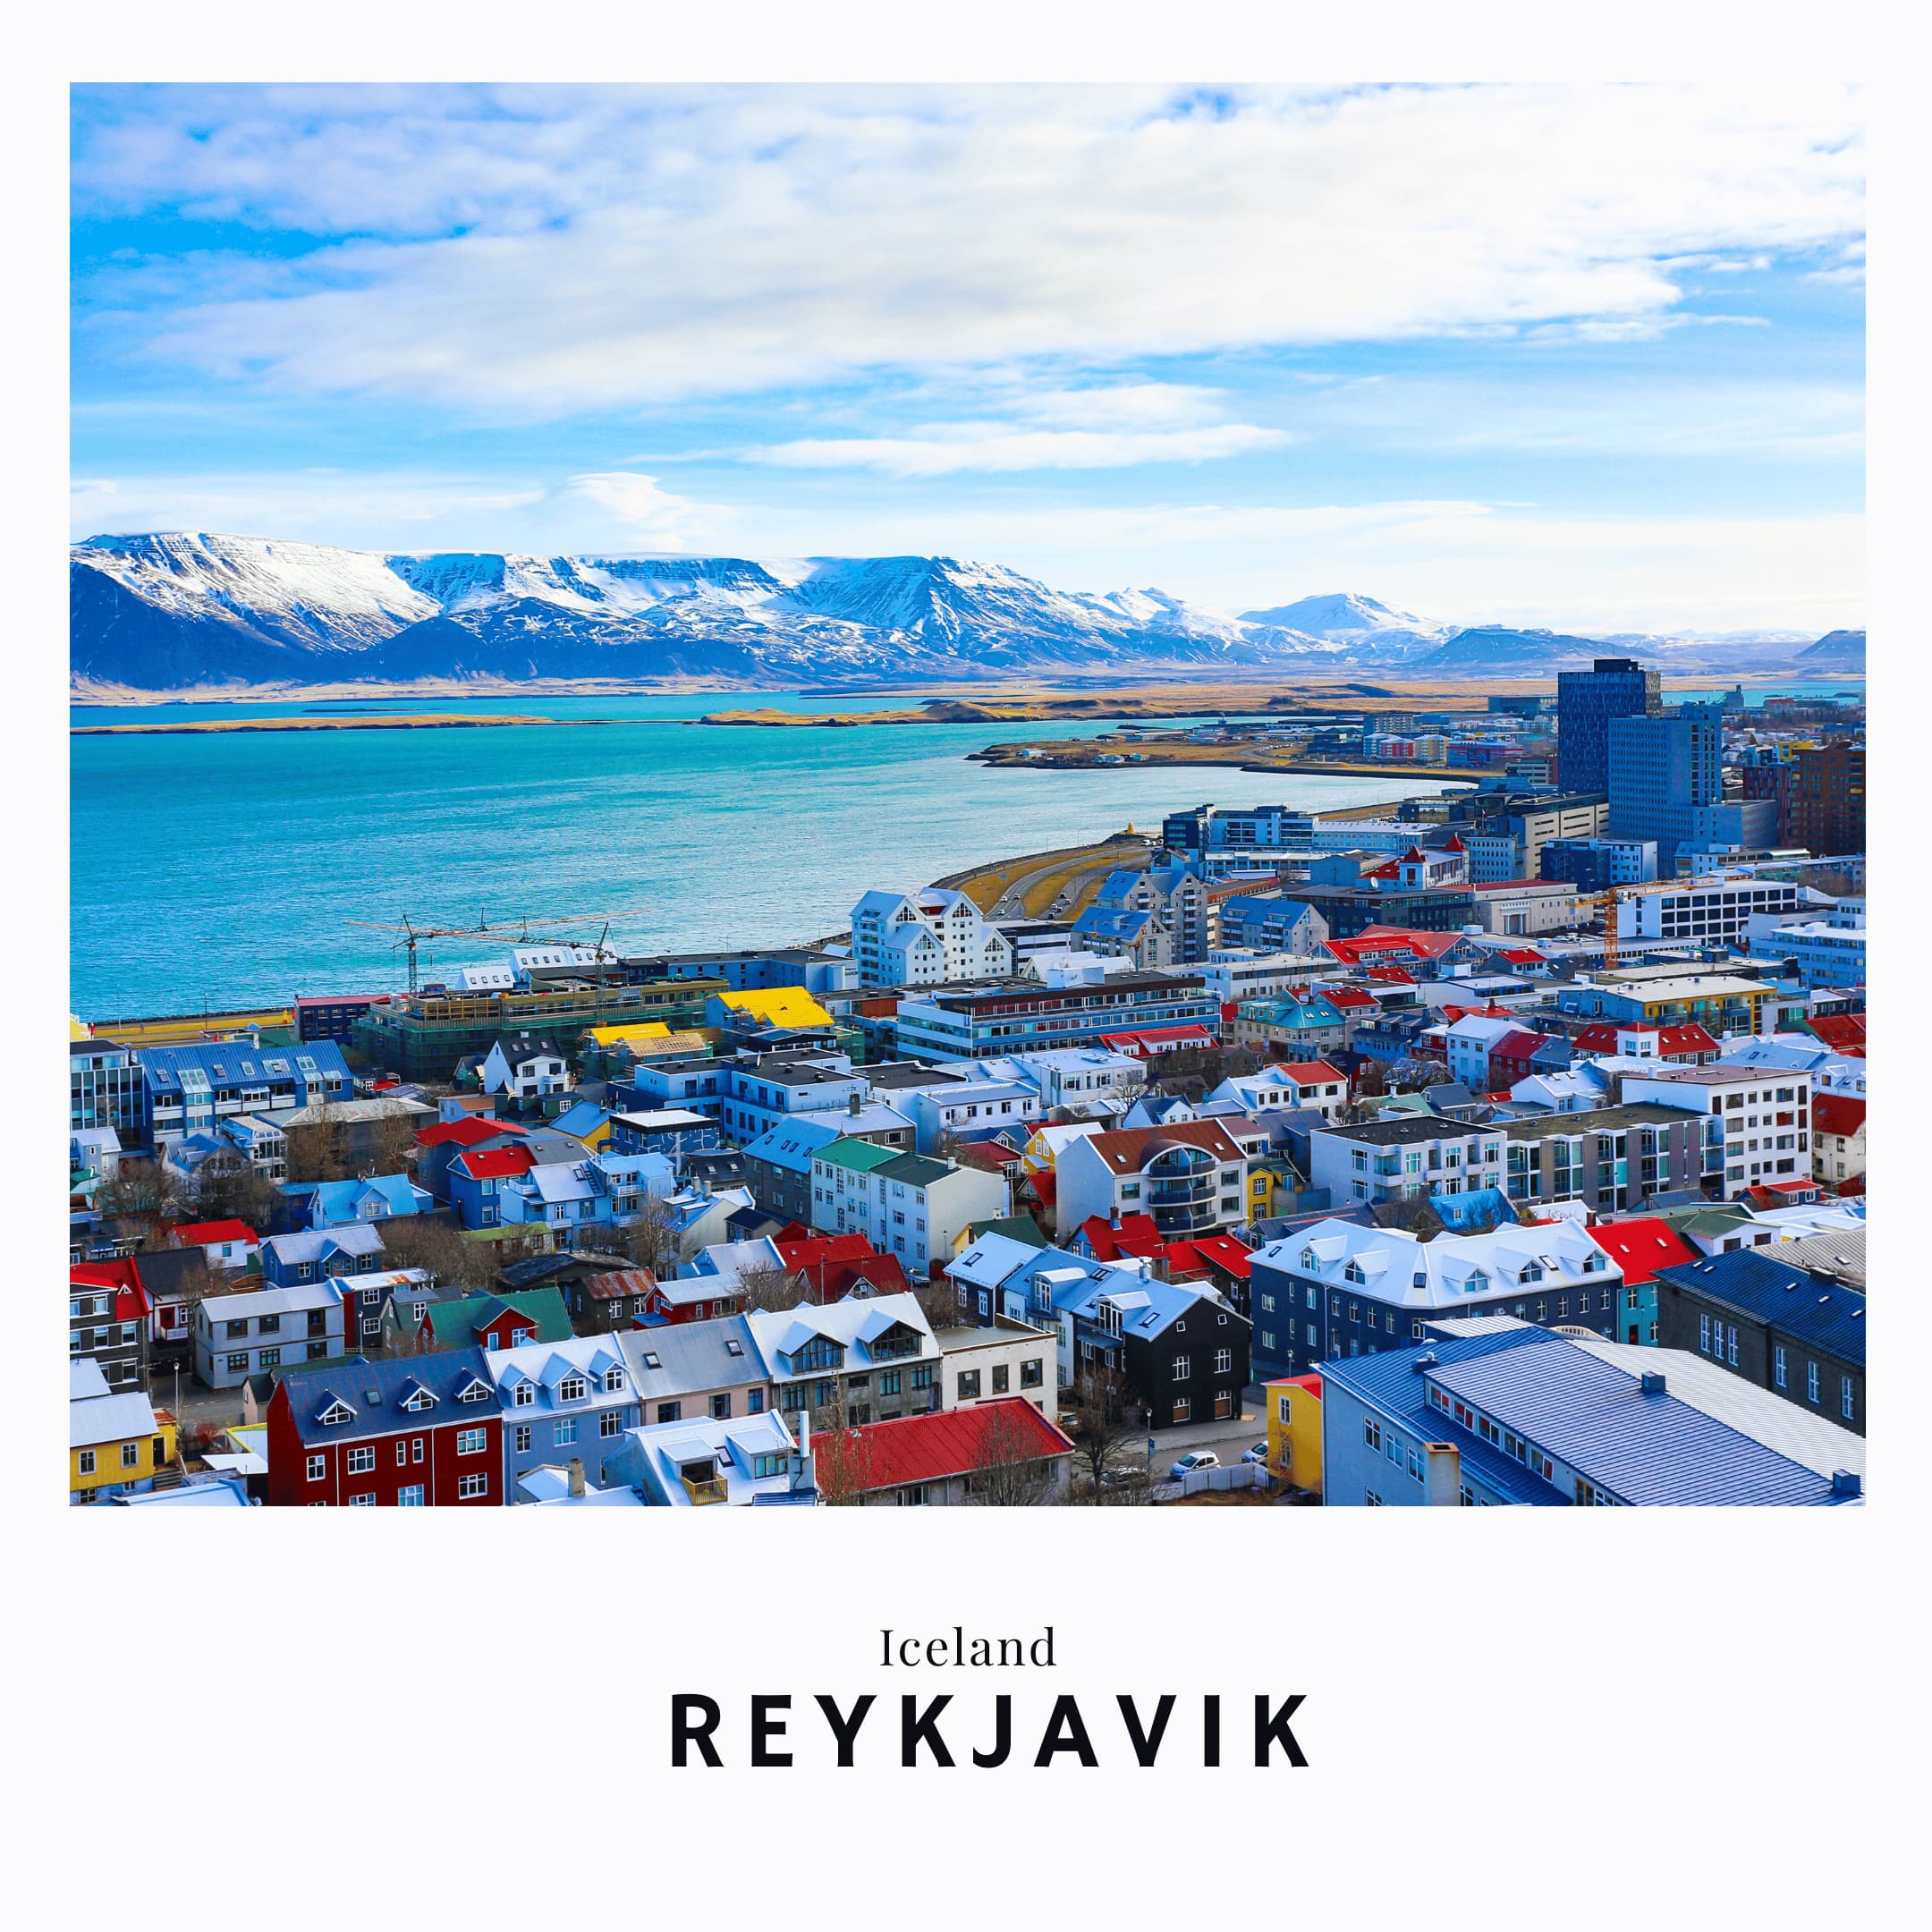 Link to Reykjavik in Iceland Travek Guide